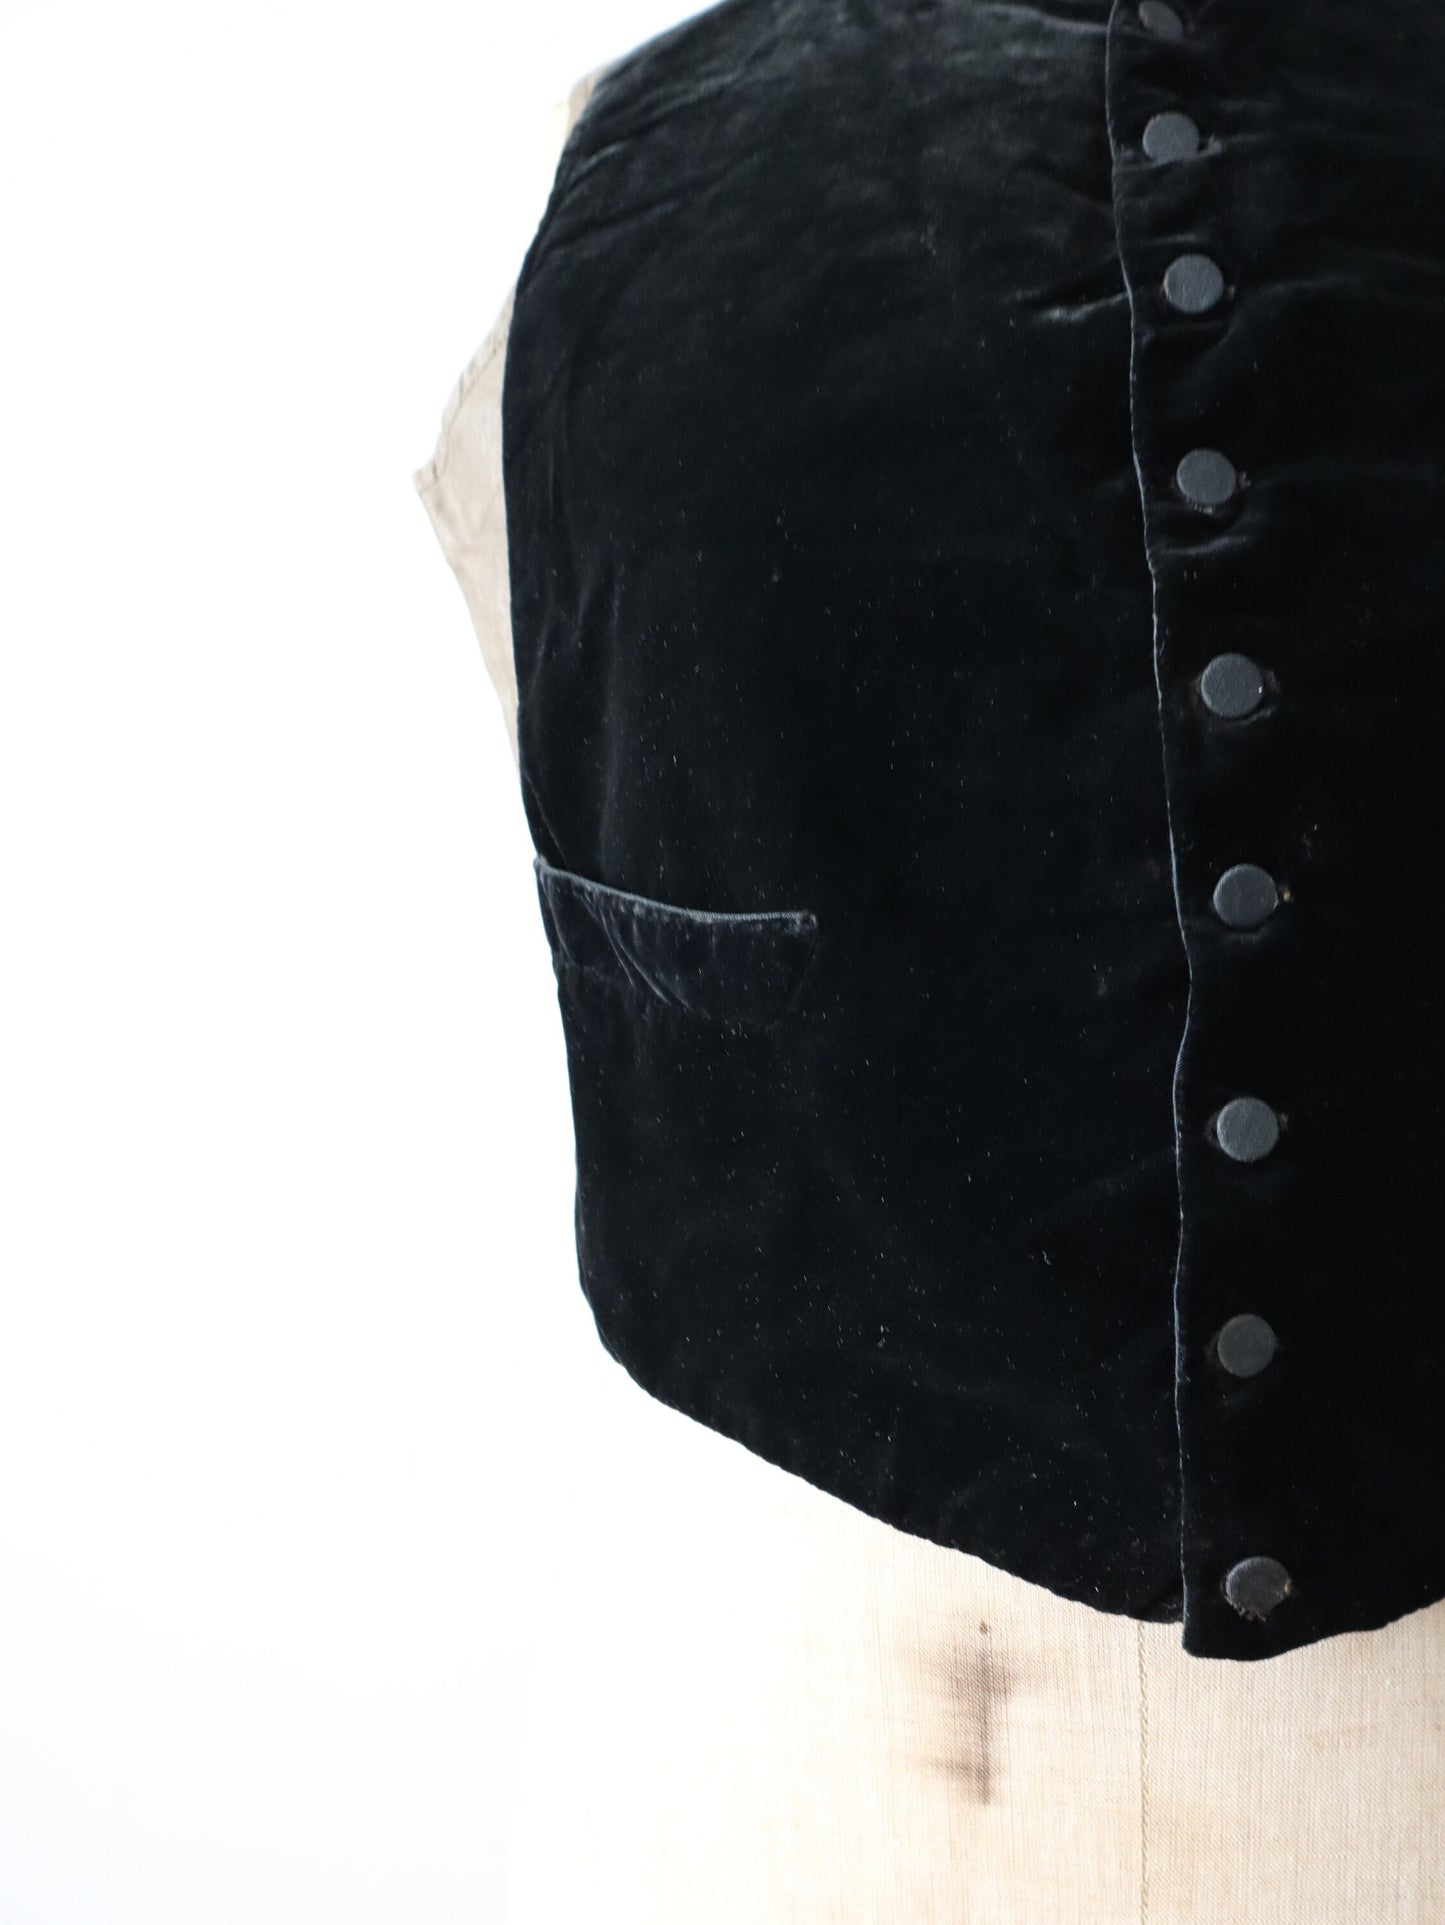 Antique 19th century French Black Silk Velvet Vest Waistcoat Glazed Backing